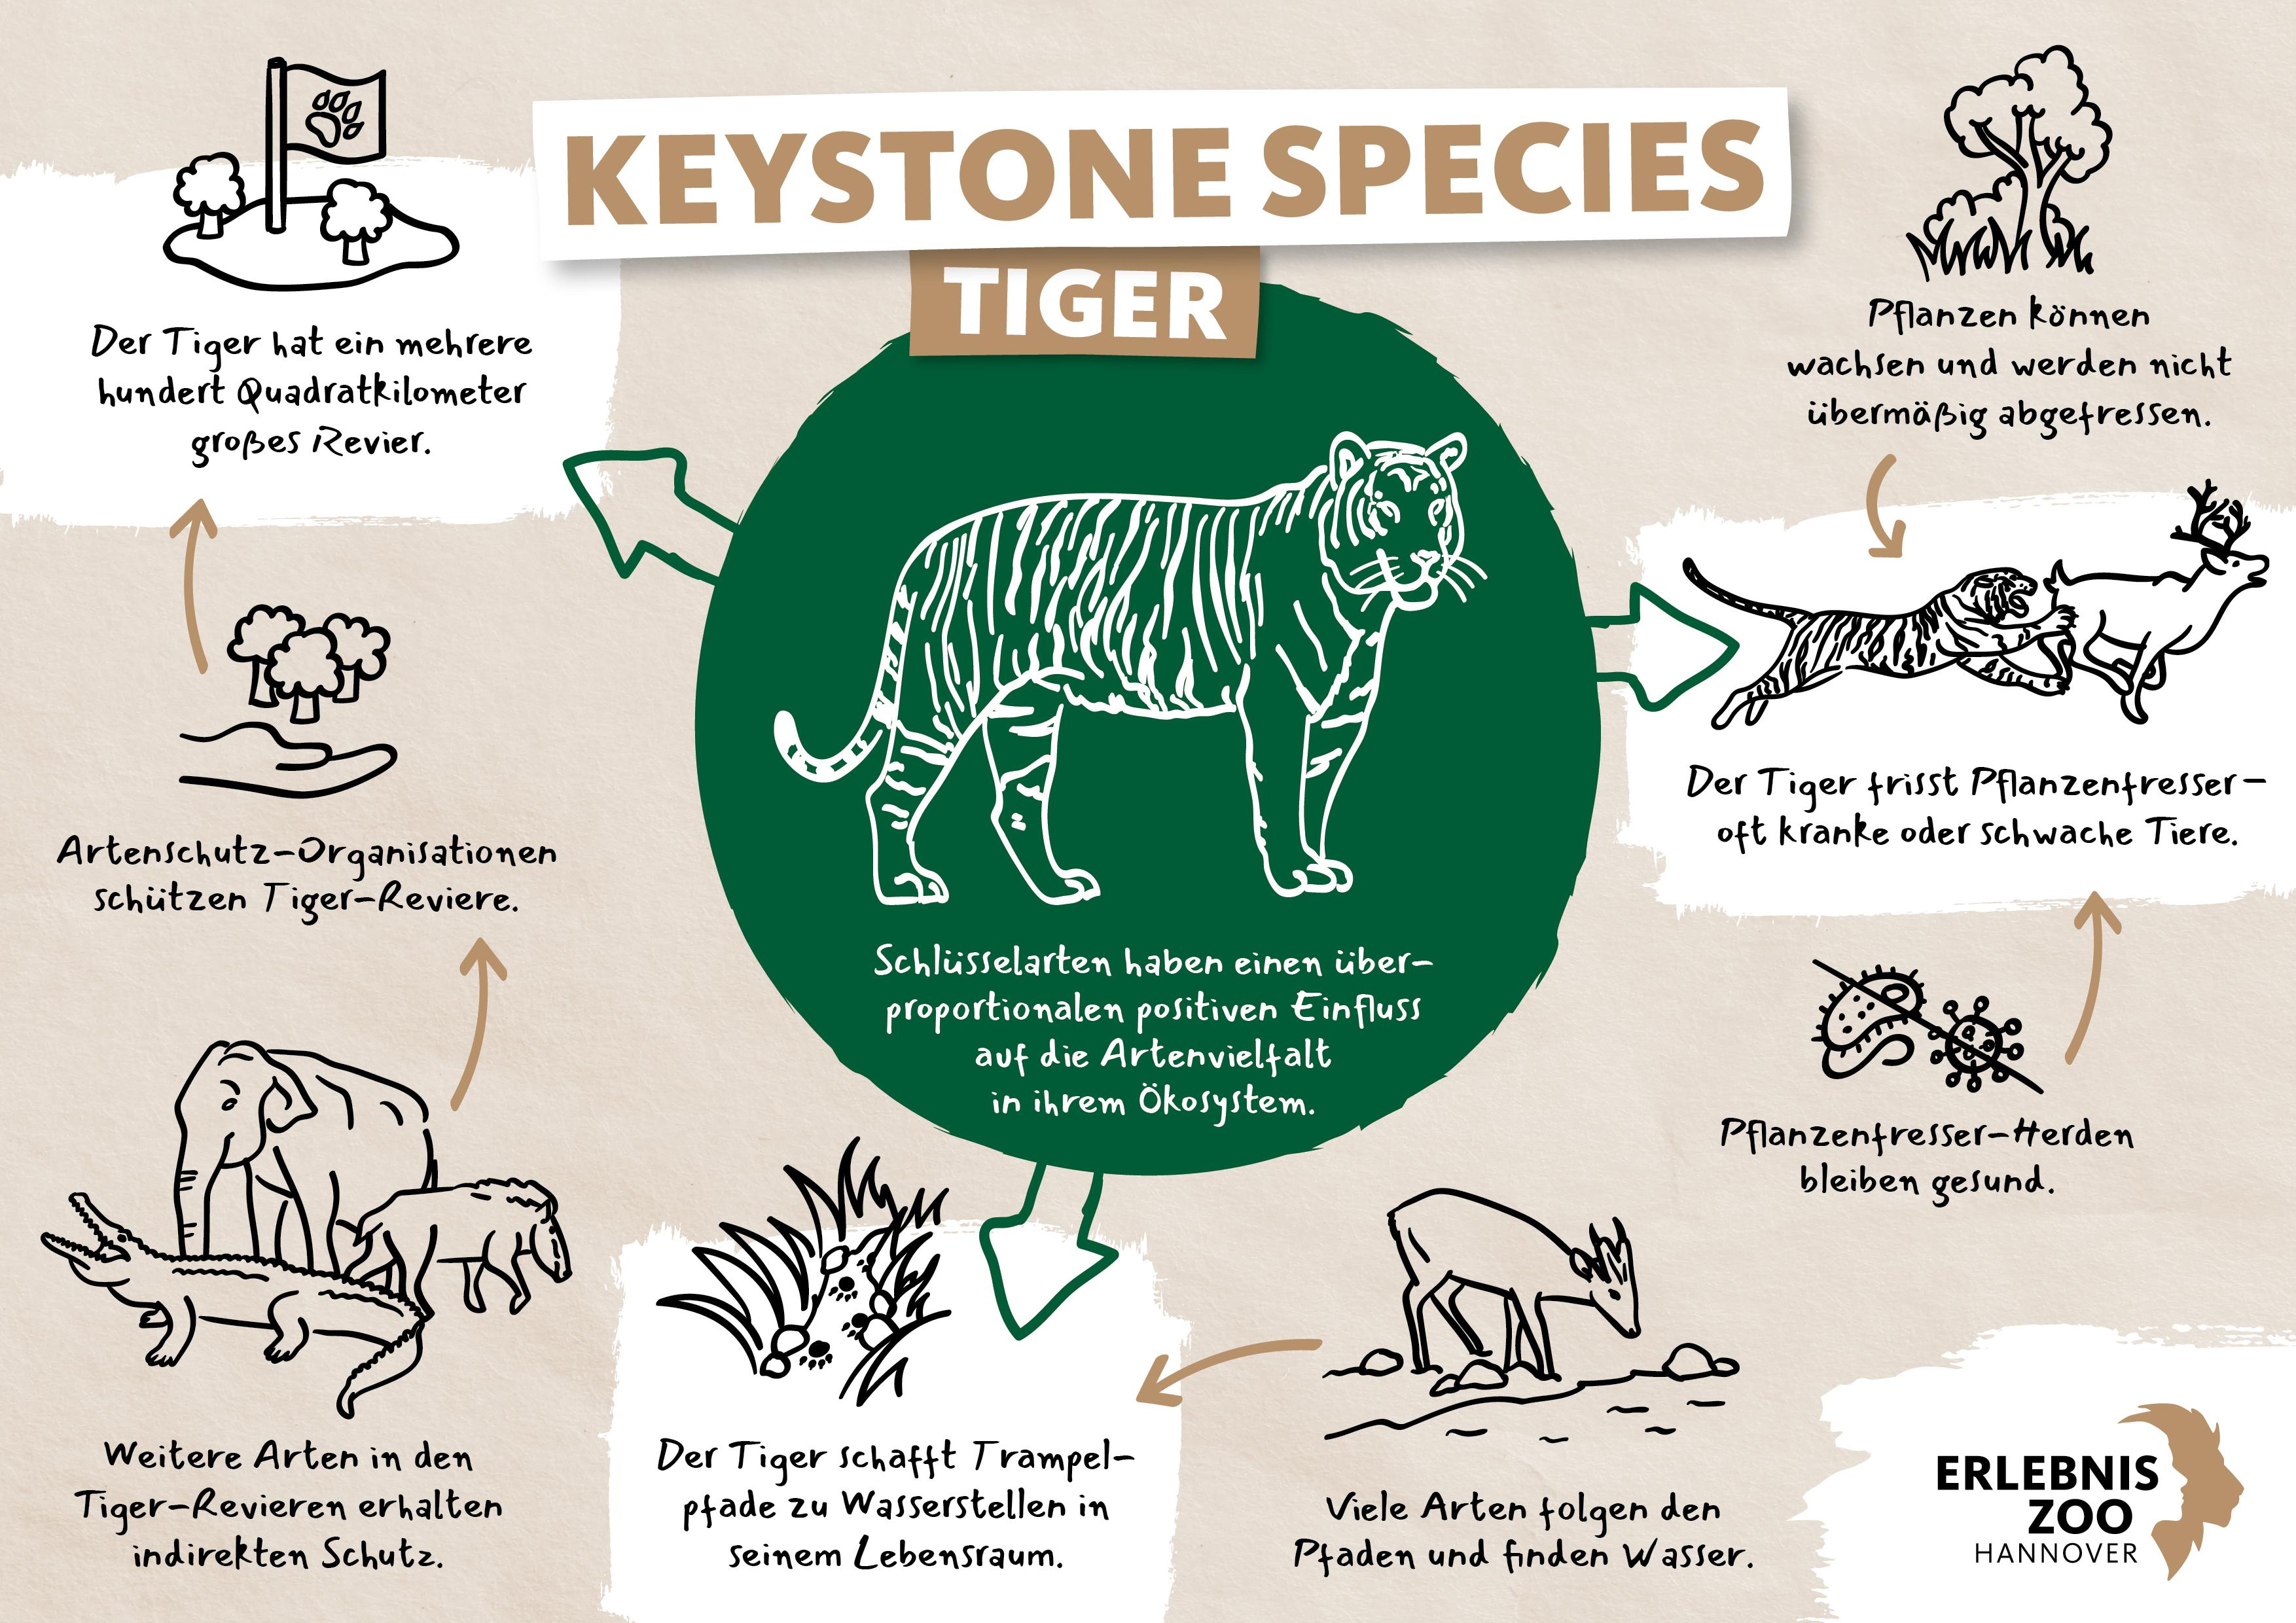 Keystone Species Tiger